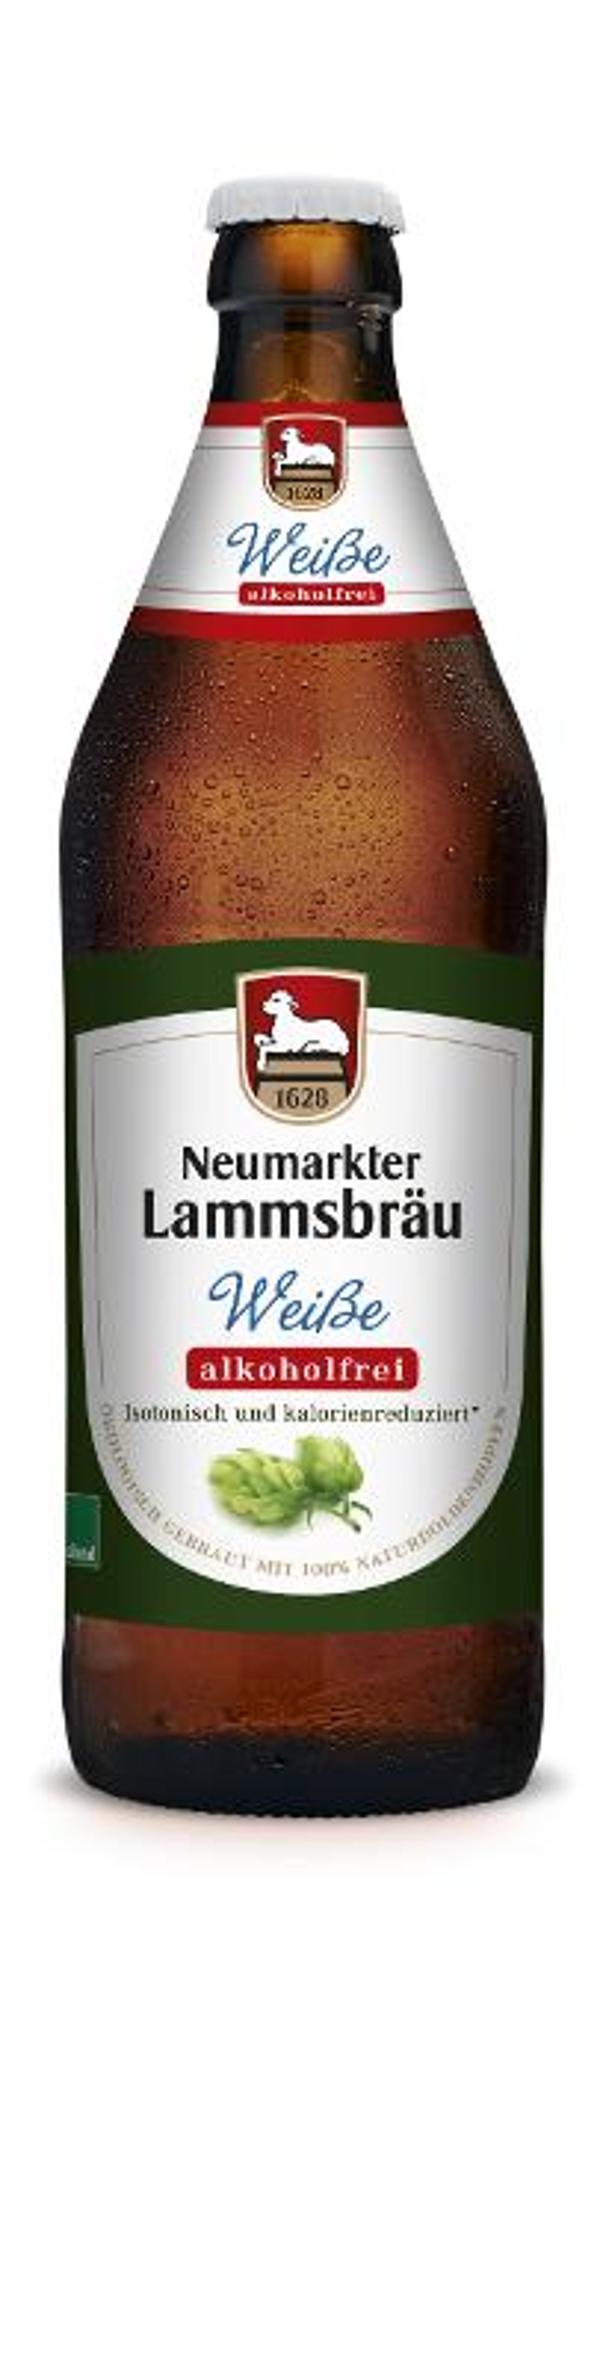 Produktfoto zu Kiste Lammsbräu Weiße alkohlfrei 10*0,5l